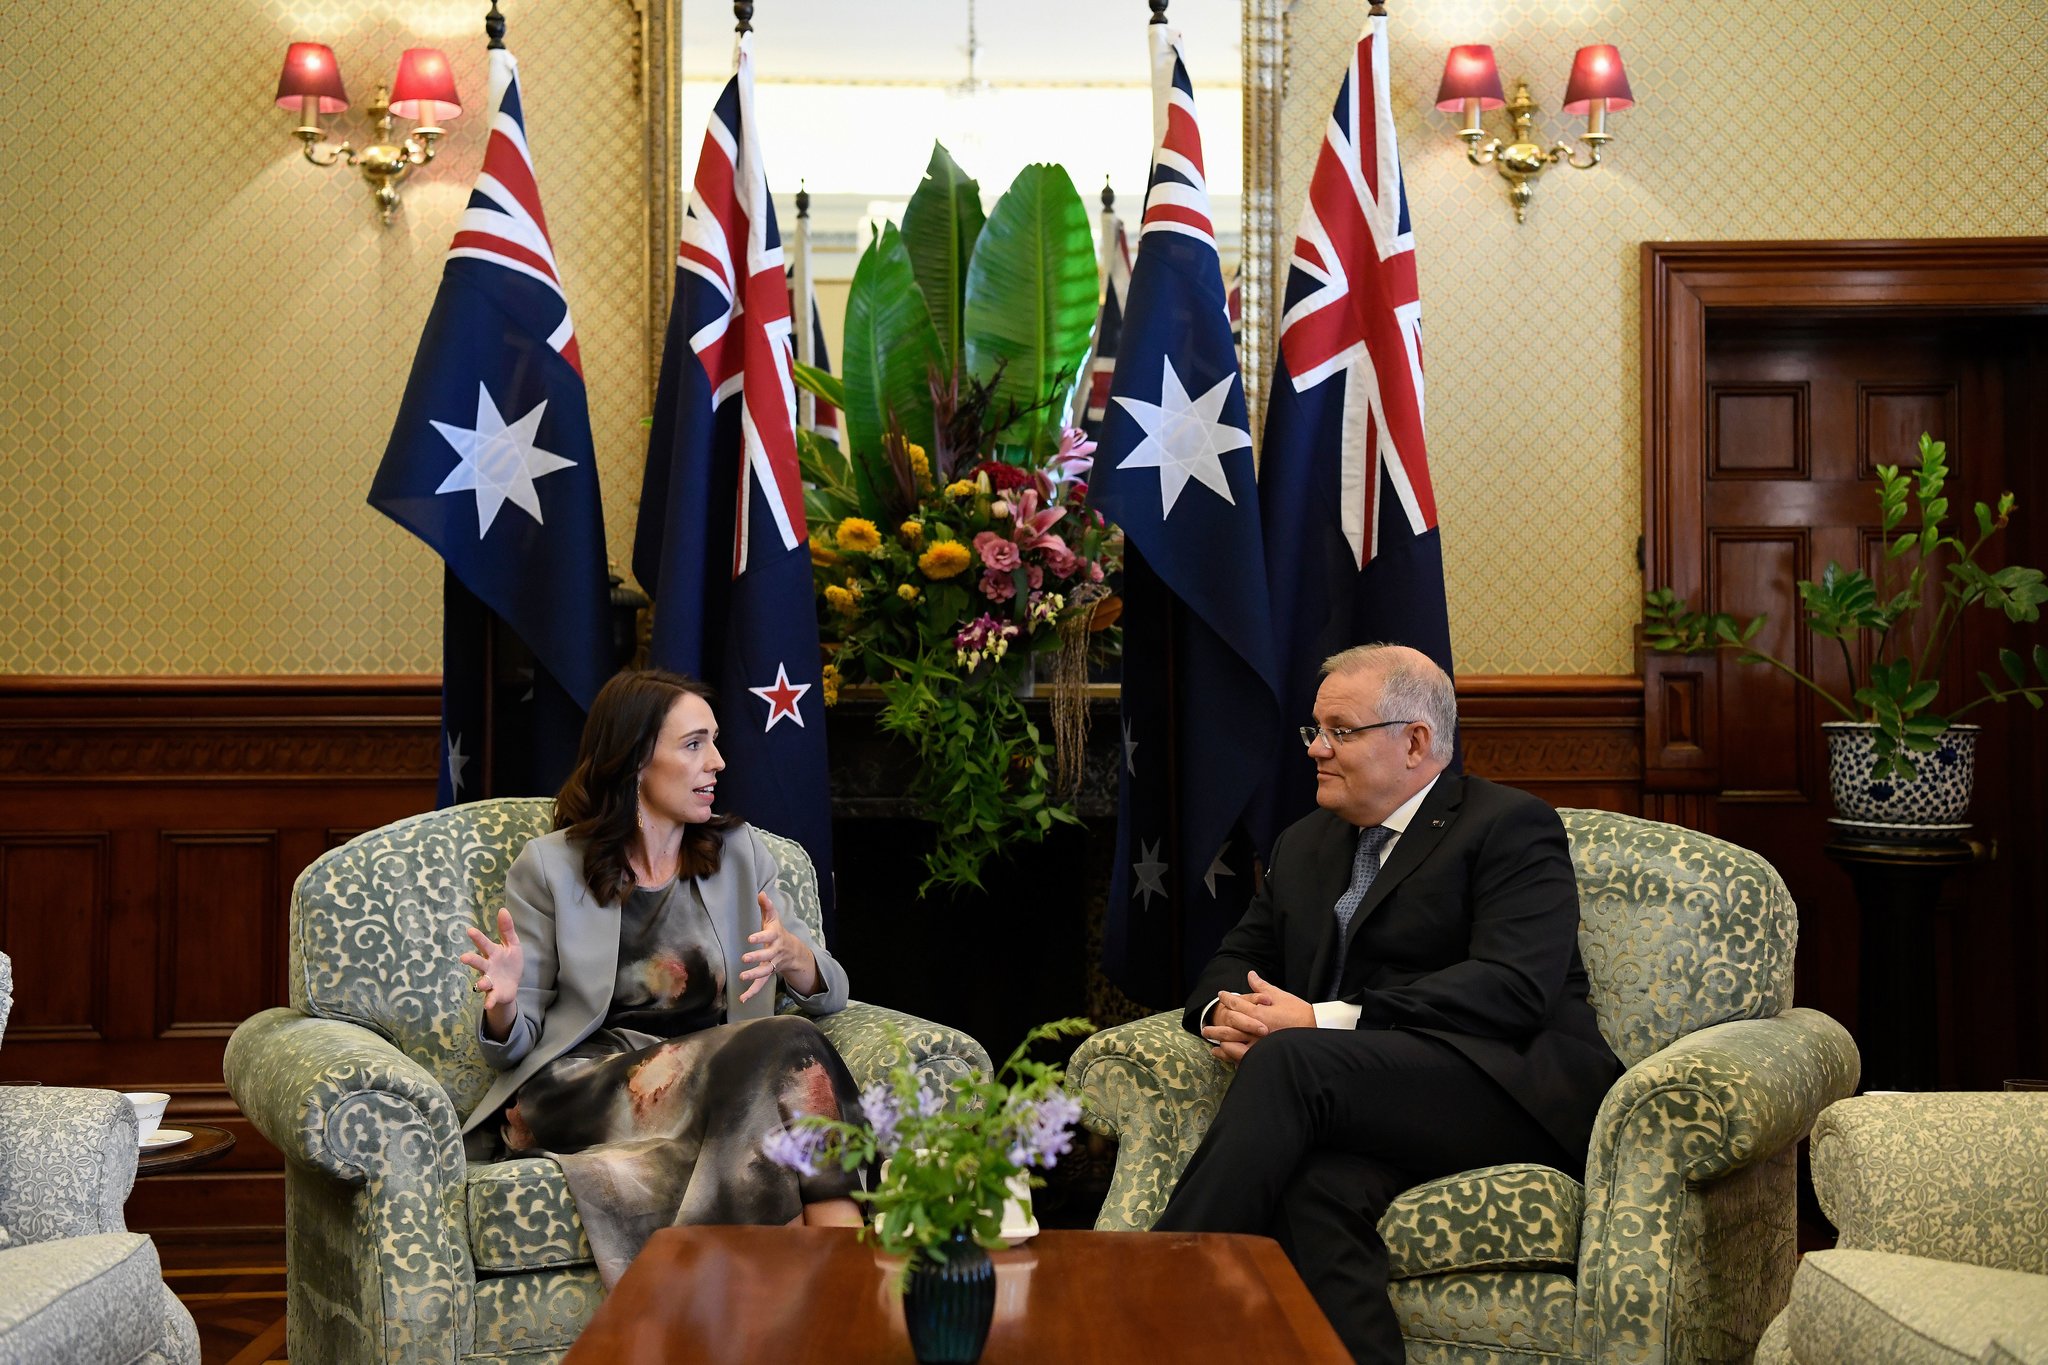 Thủ tướng Úc Morrison và người đồng cấp ở New Zealand – bà Jacinda Ardern, trong một buổi gặp mặt (ảnh: NY Times)